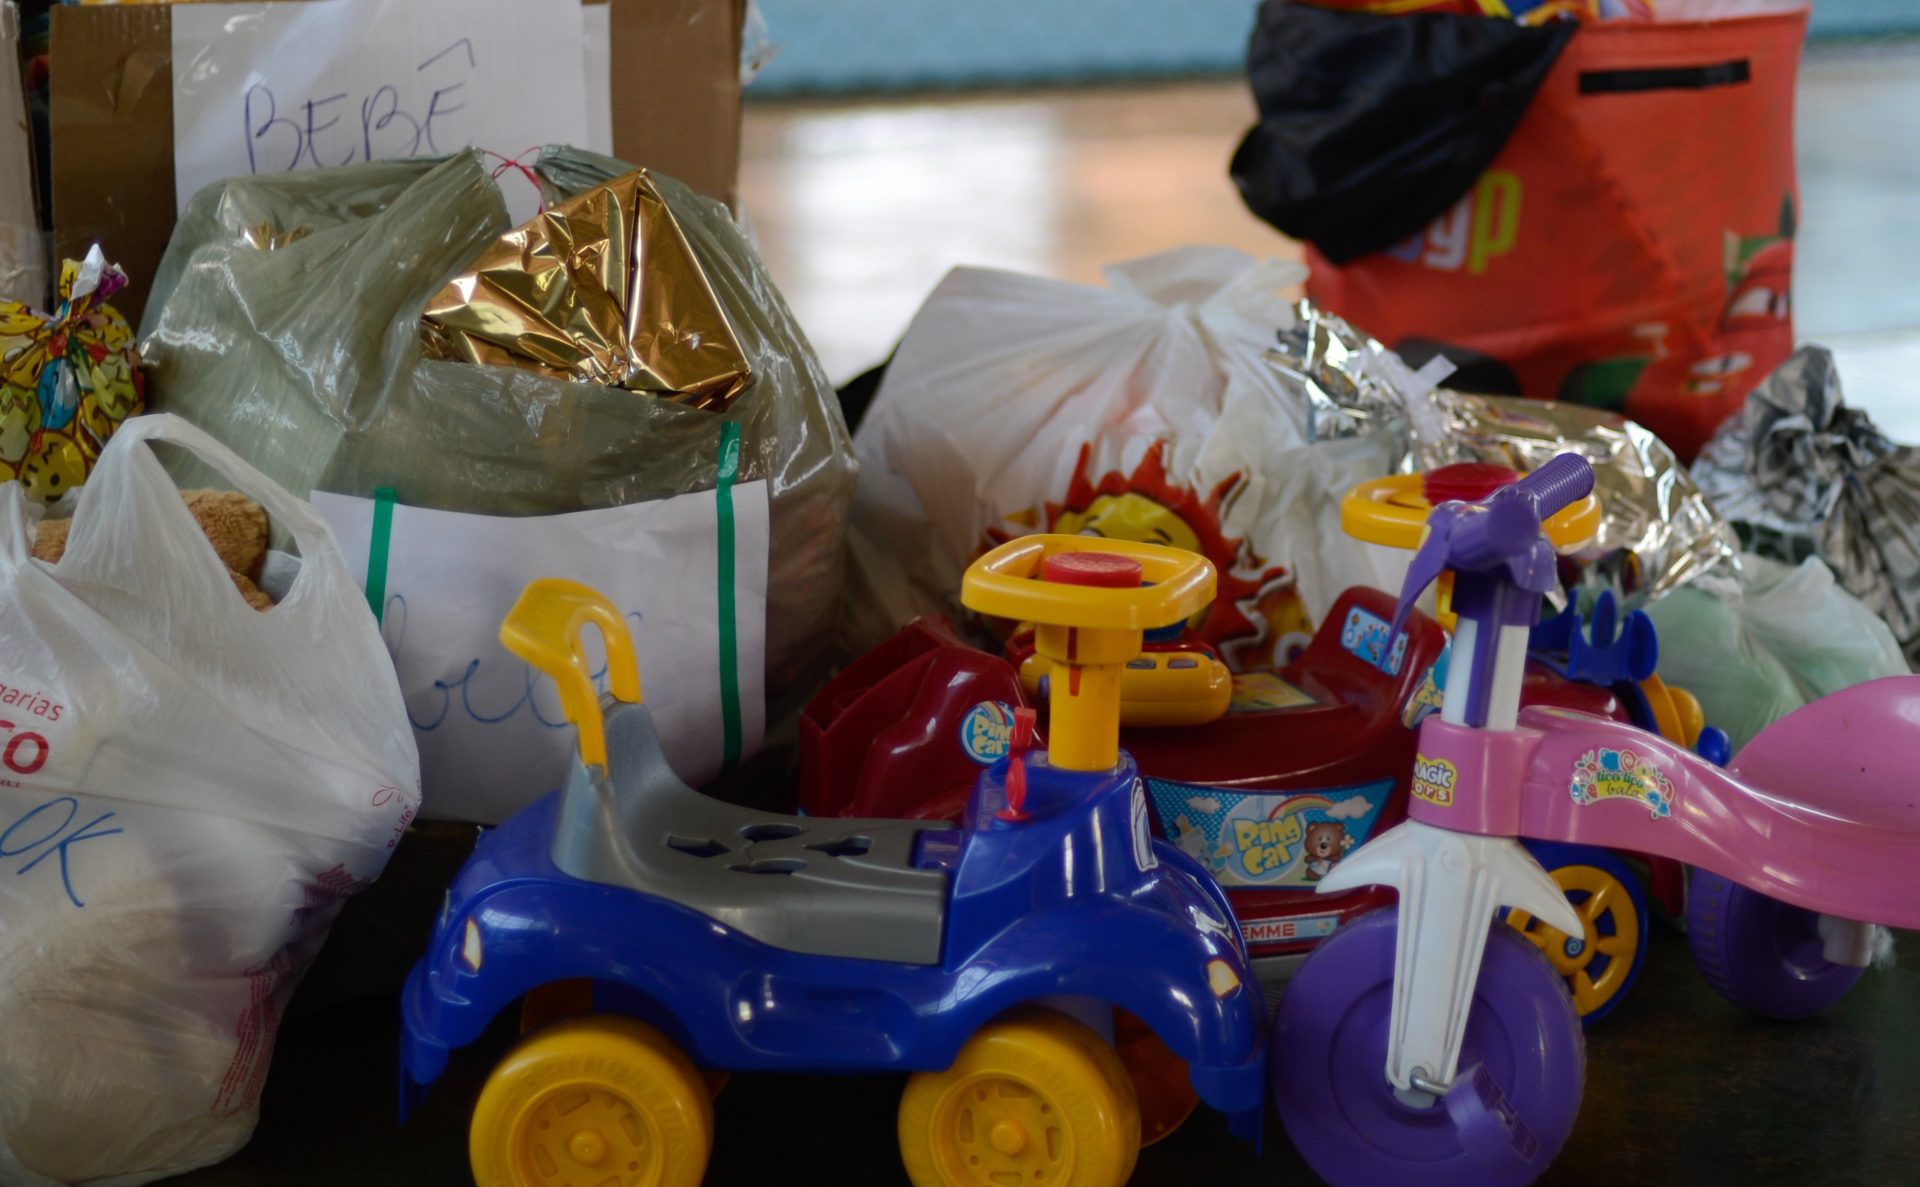 Delegacias da Região Metropolitana arrecadam brinquedos para crianças carentes